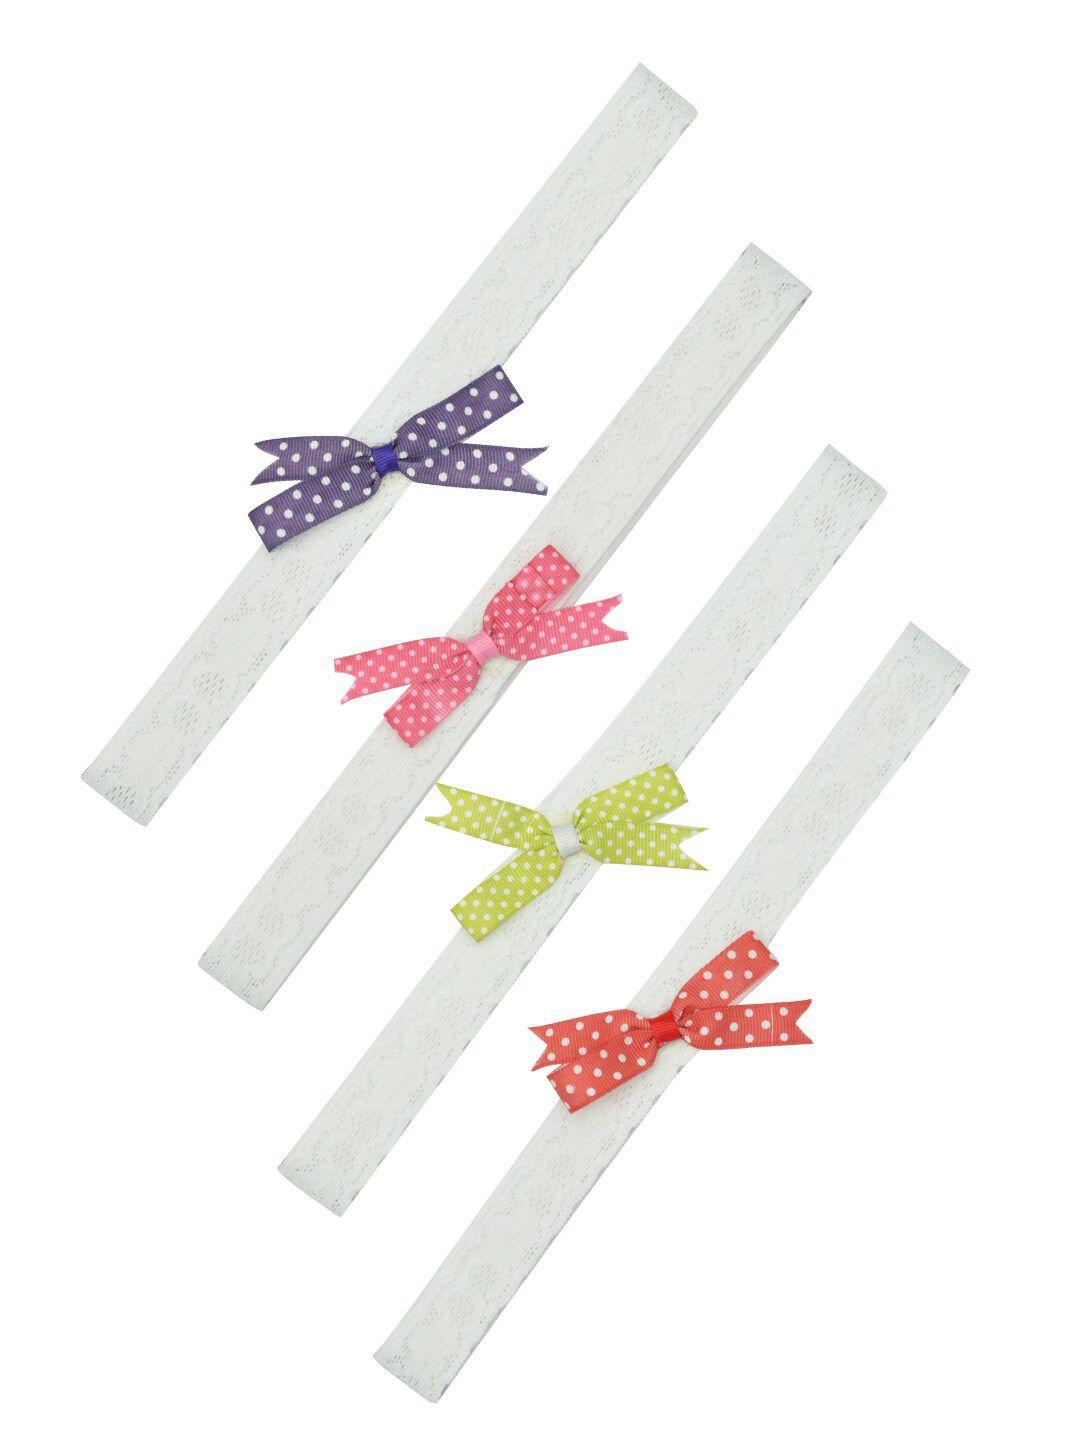 funkrafts girls white & pink set of 4 hairband